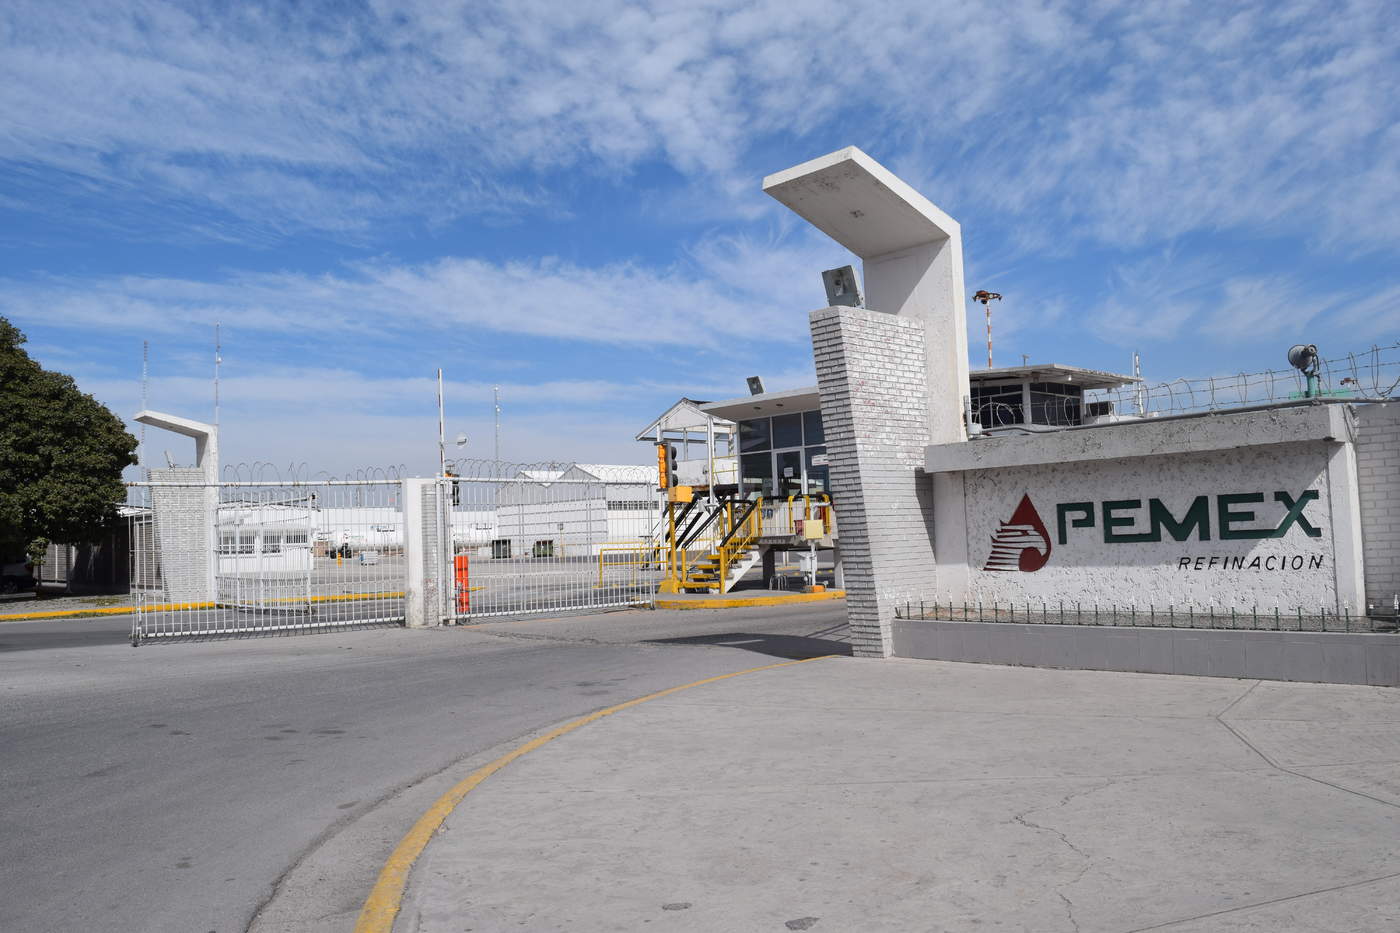 La empresa estatal Petróleos Mexicanos (Pemex) reportó este miércoles una pérdida neta en 2018 de 7,551 millones de dólares, lo que representó una disminución del 47.1 % frente al resultado negativo de 14,270 millones de dólares de 2017. (ARCHIVO)